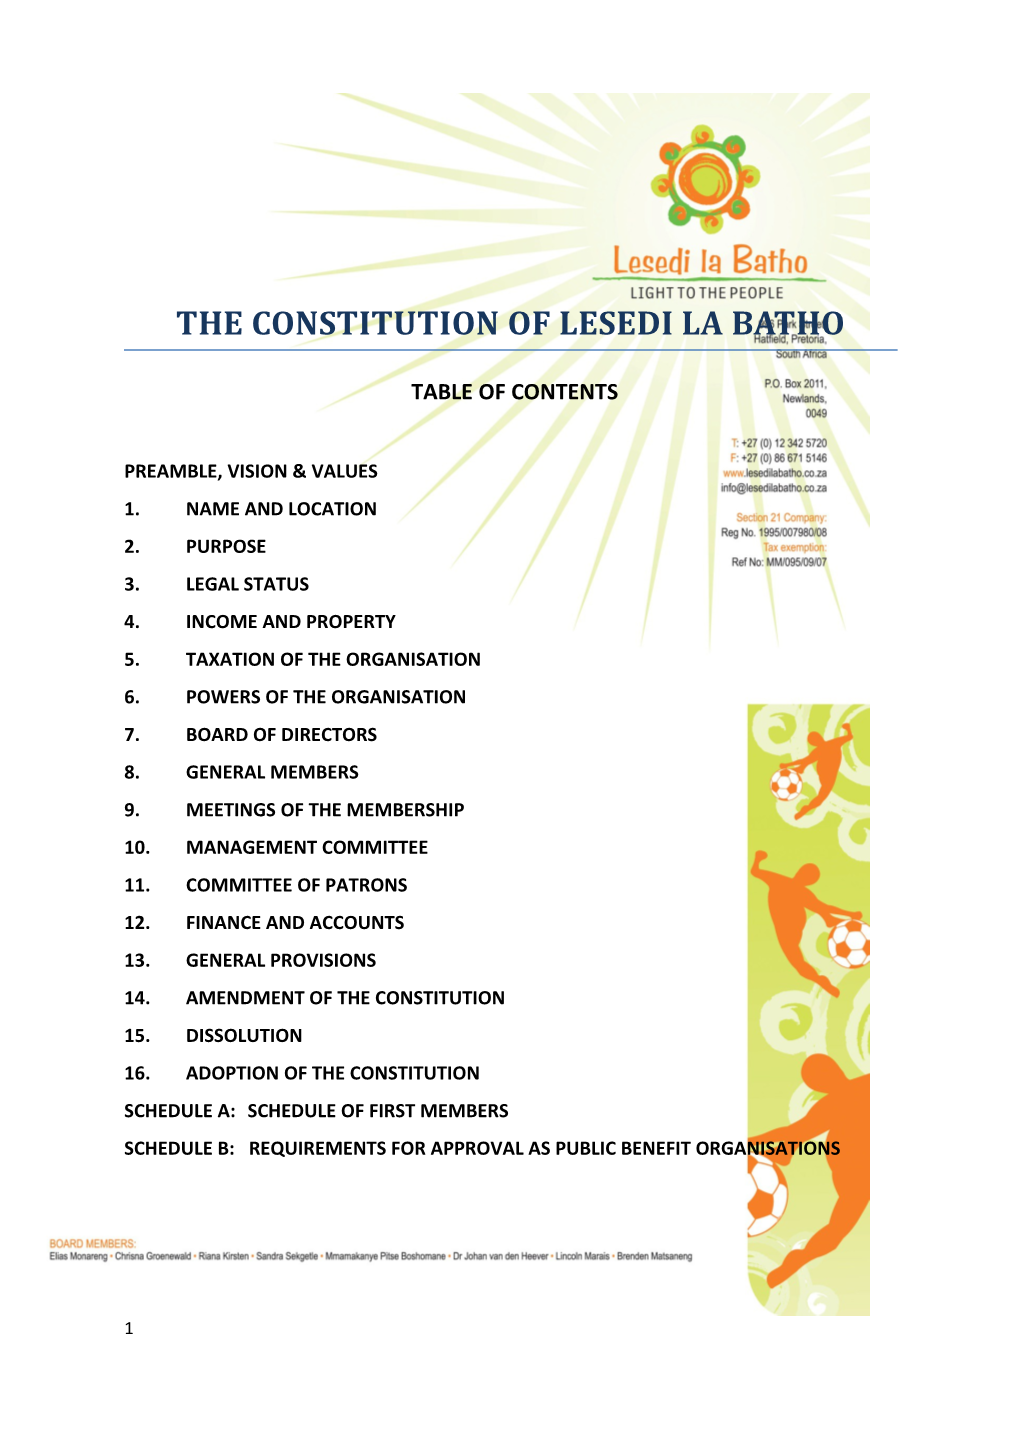 The Constitution of Lesedi La Batho